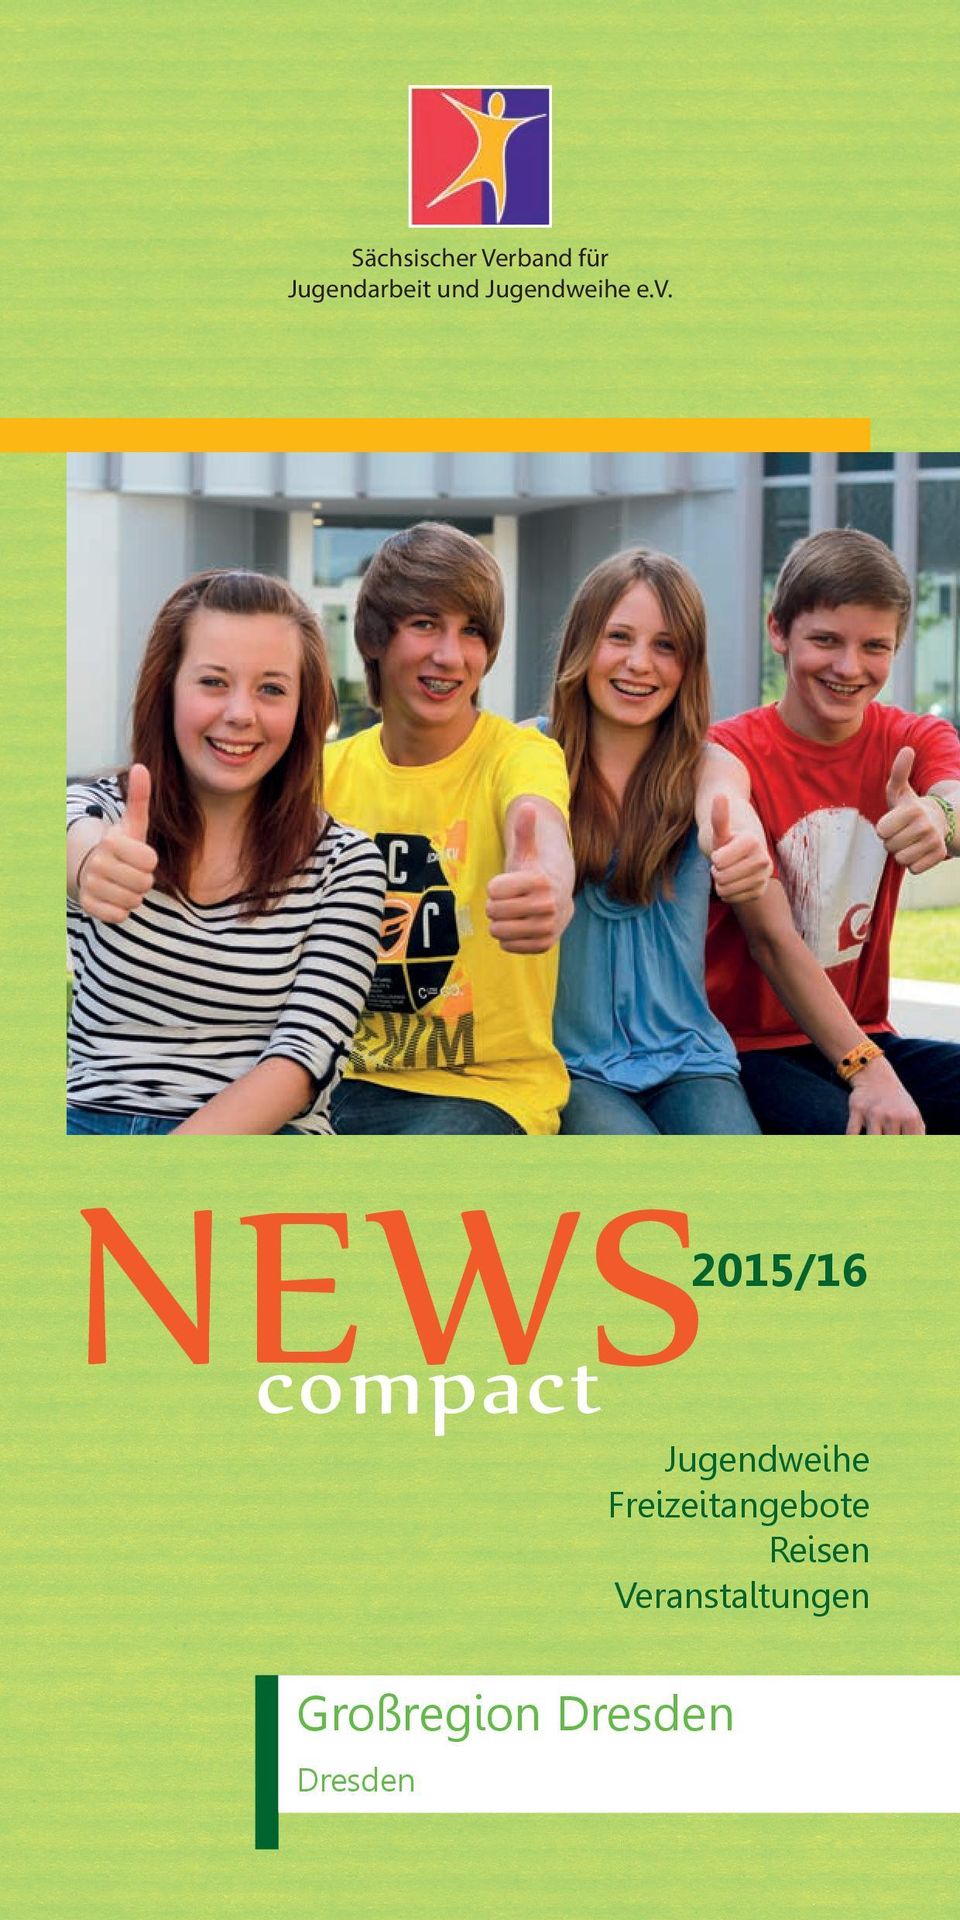 NEWS 2015/16 compact Jugendweihe